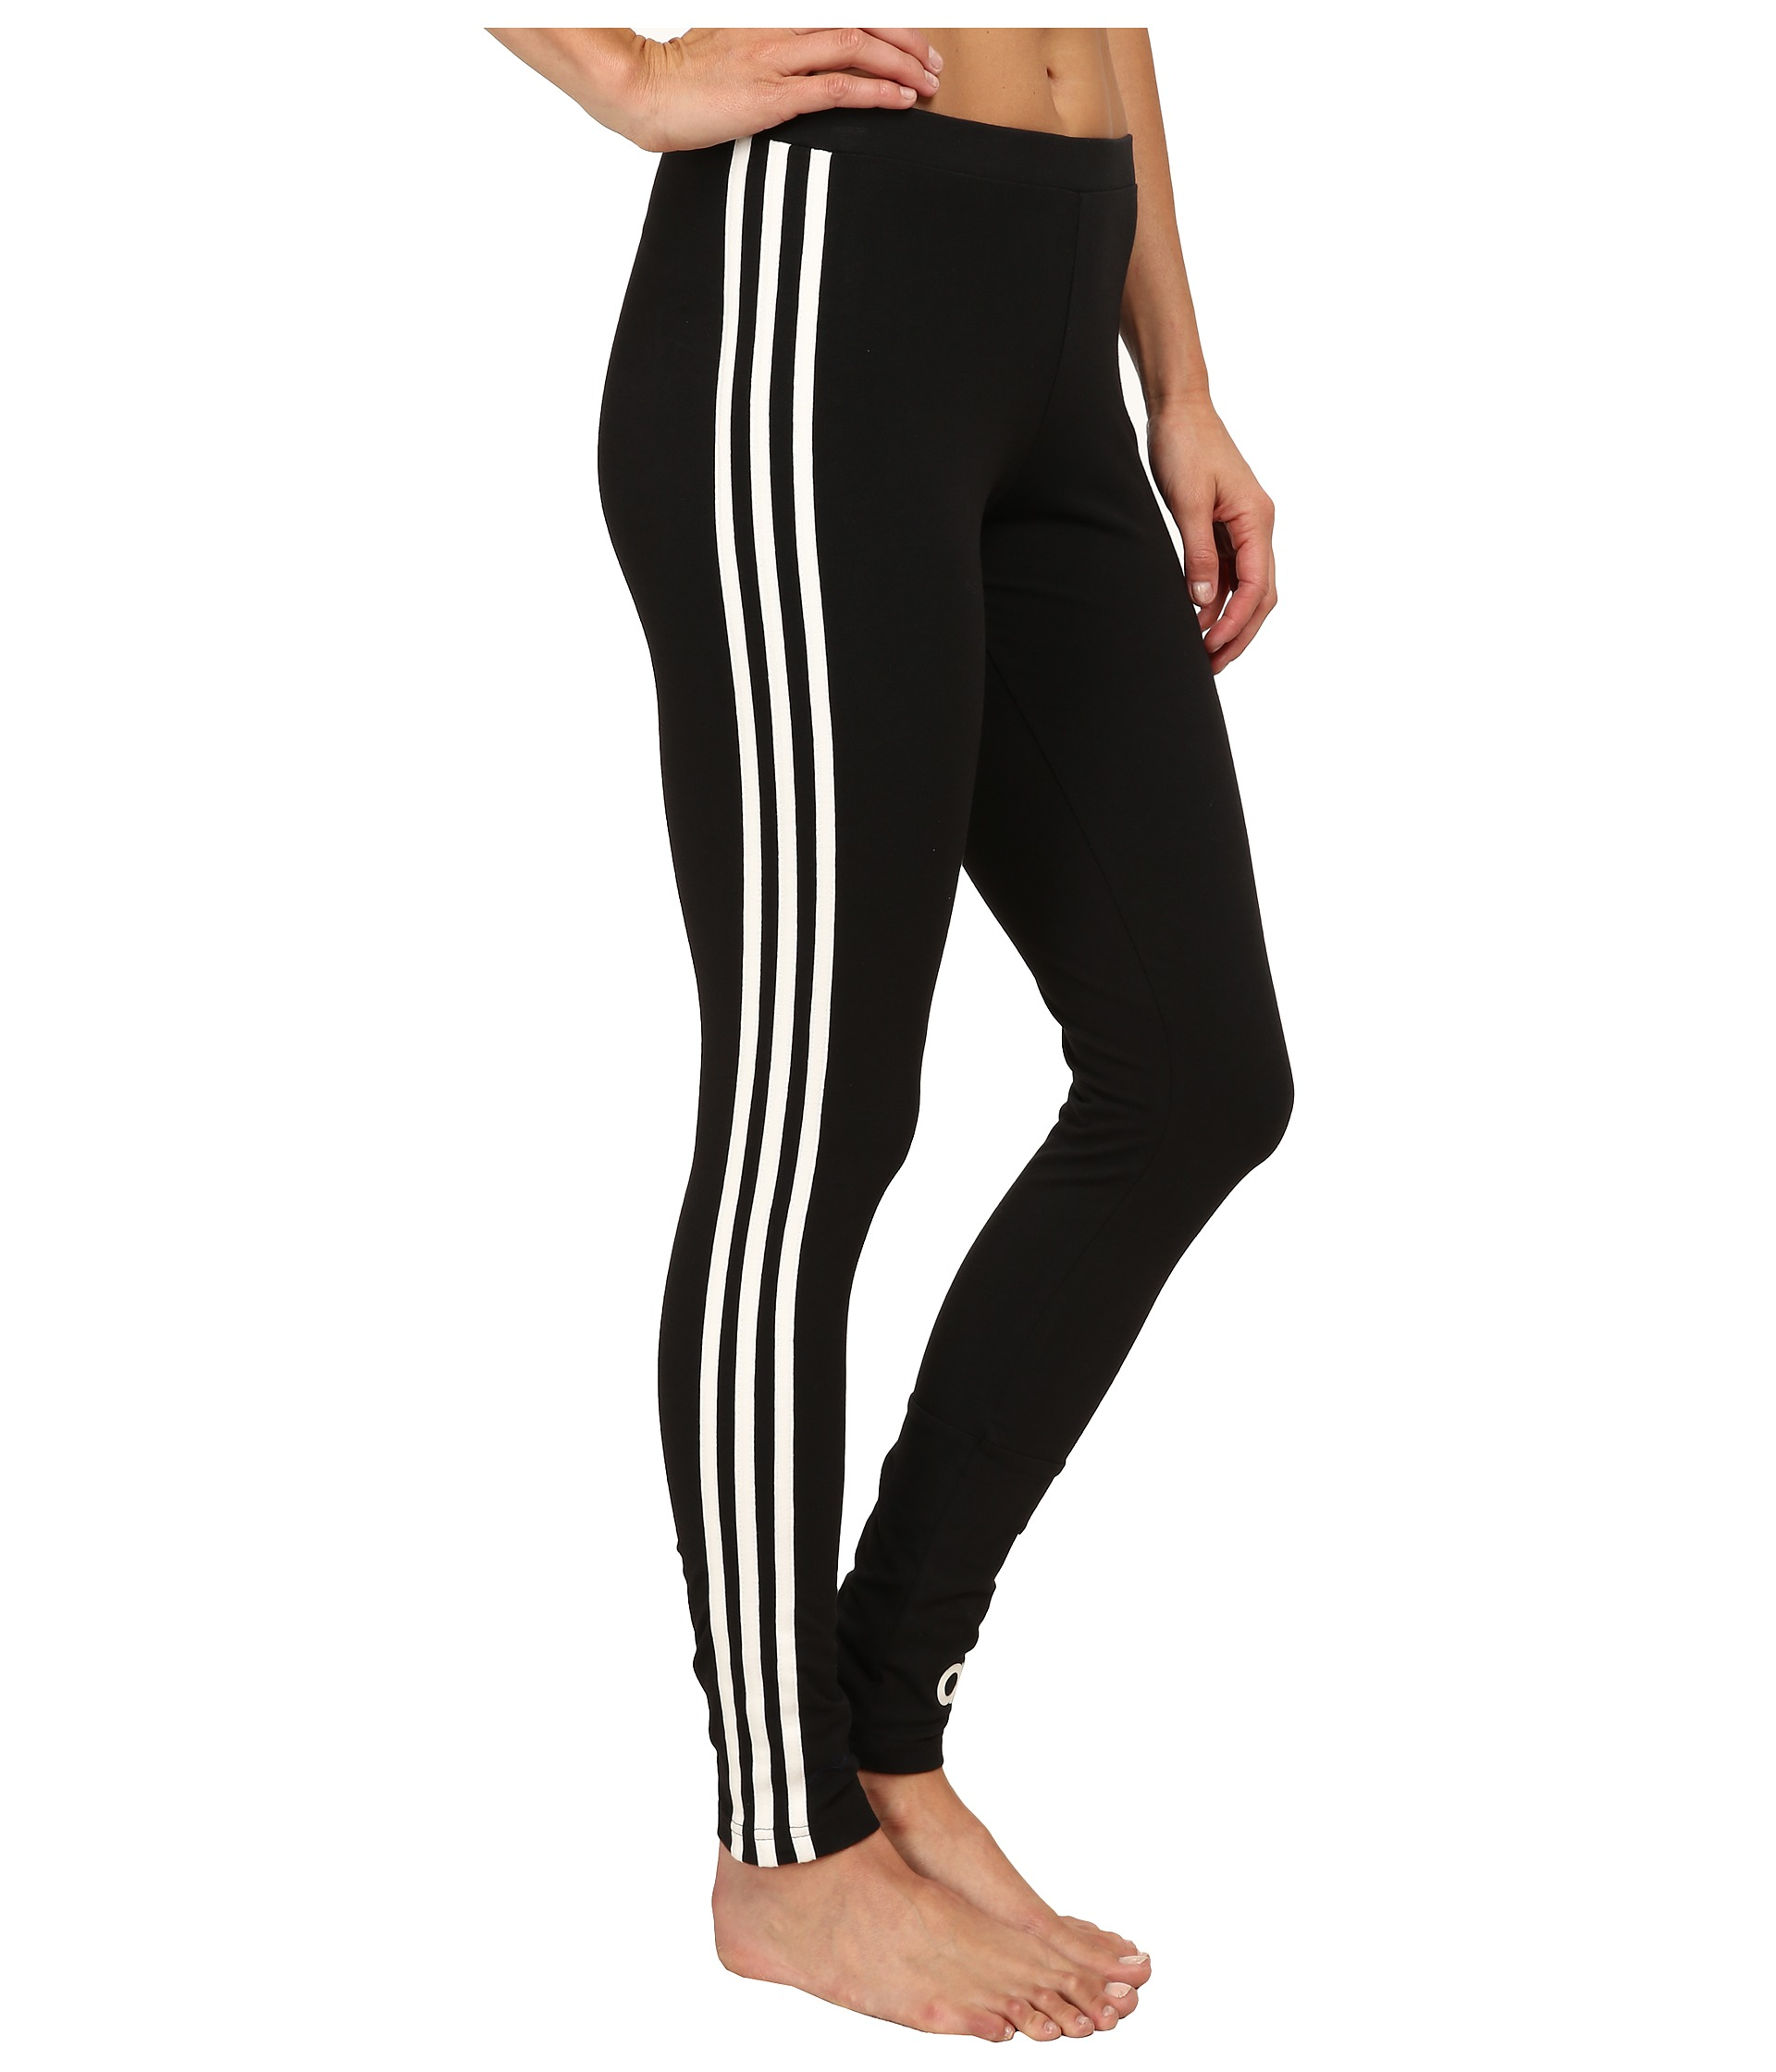 Adidas originals 3-stripes Leggings in Black | Lyst